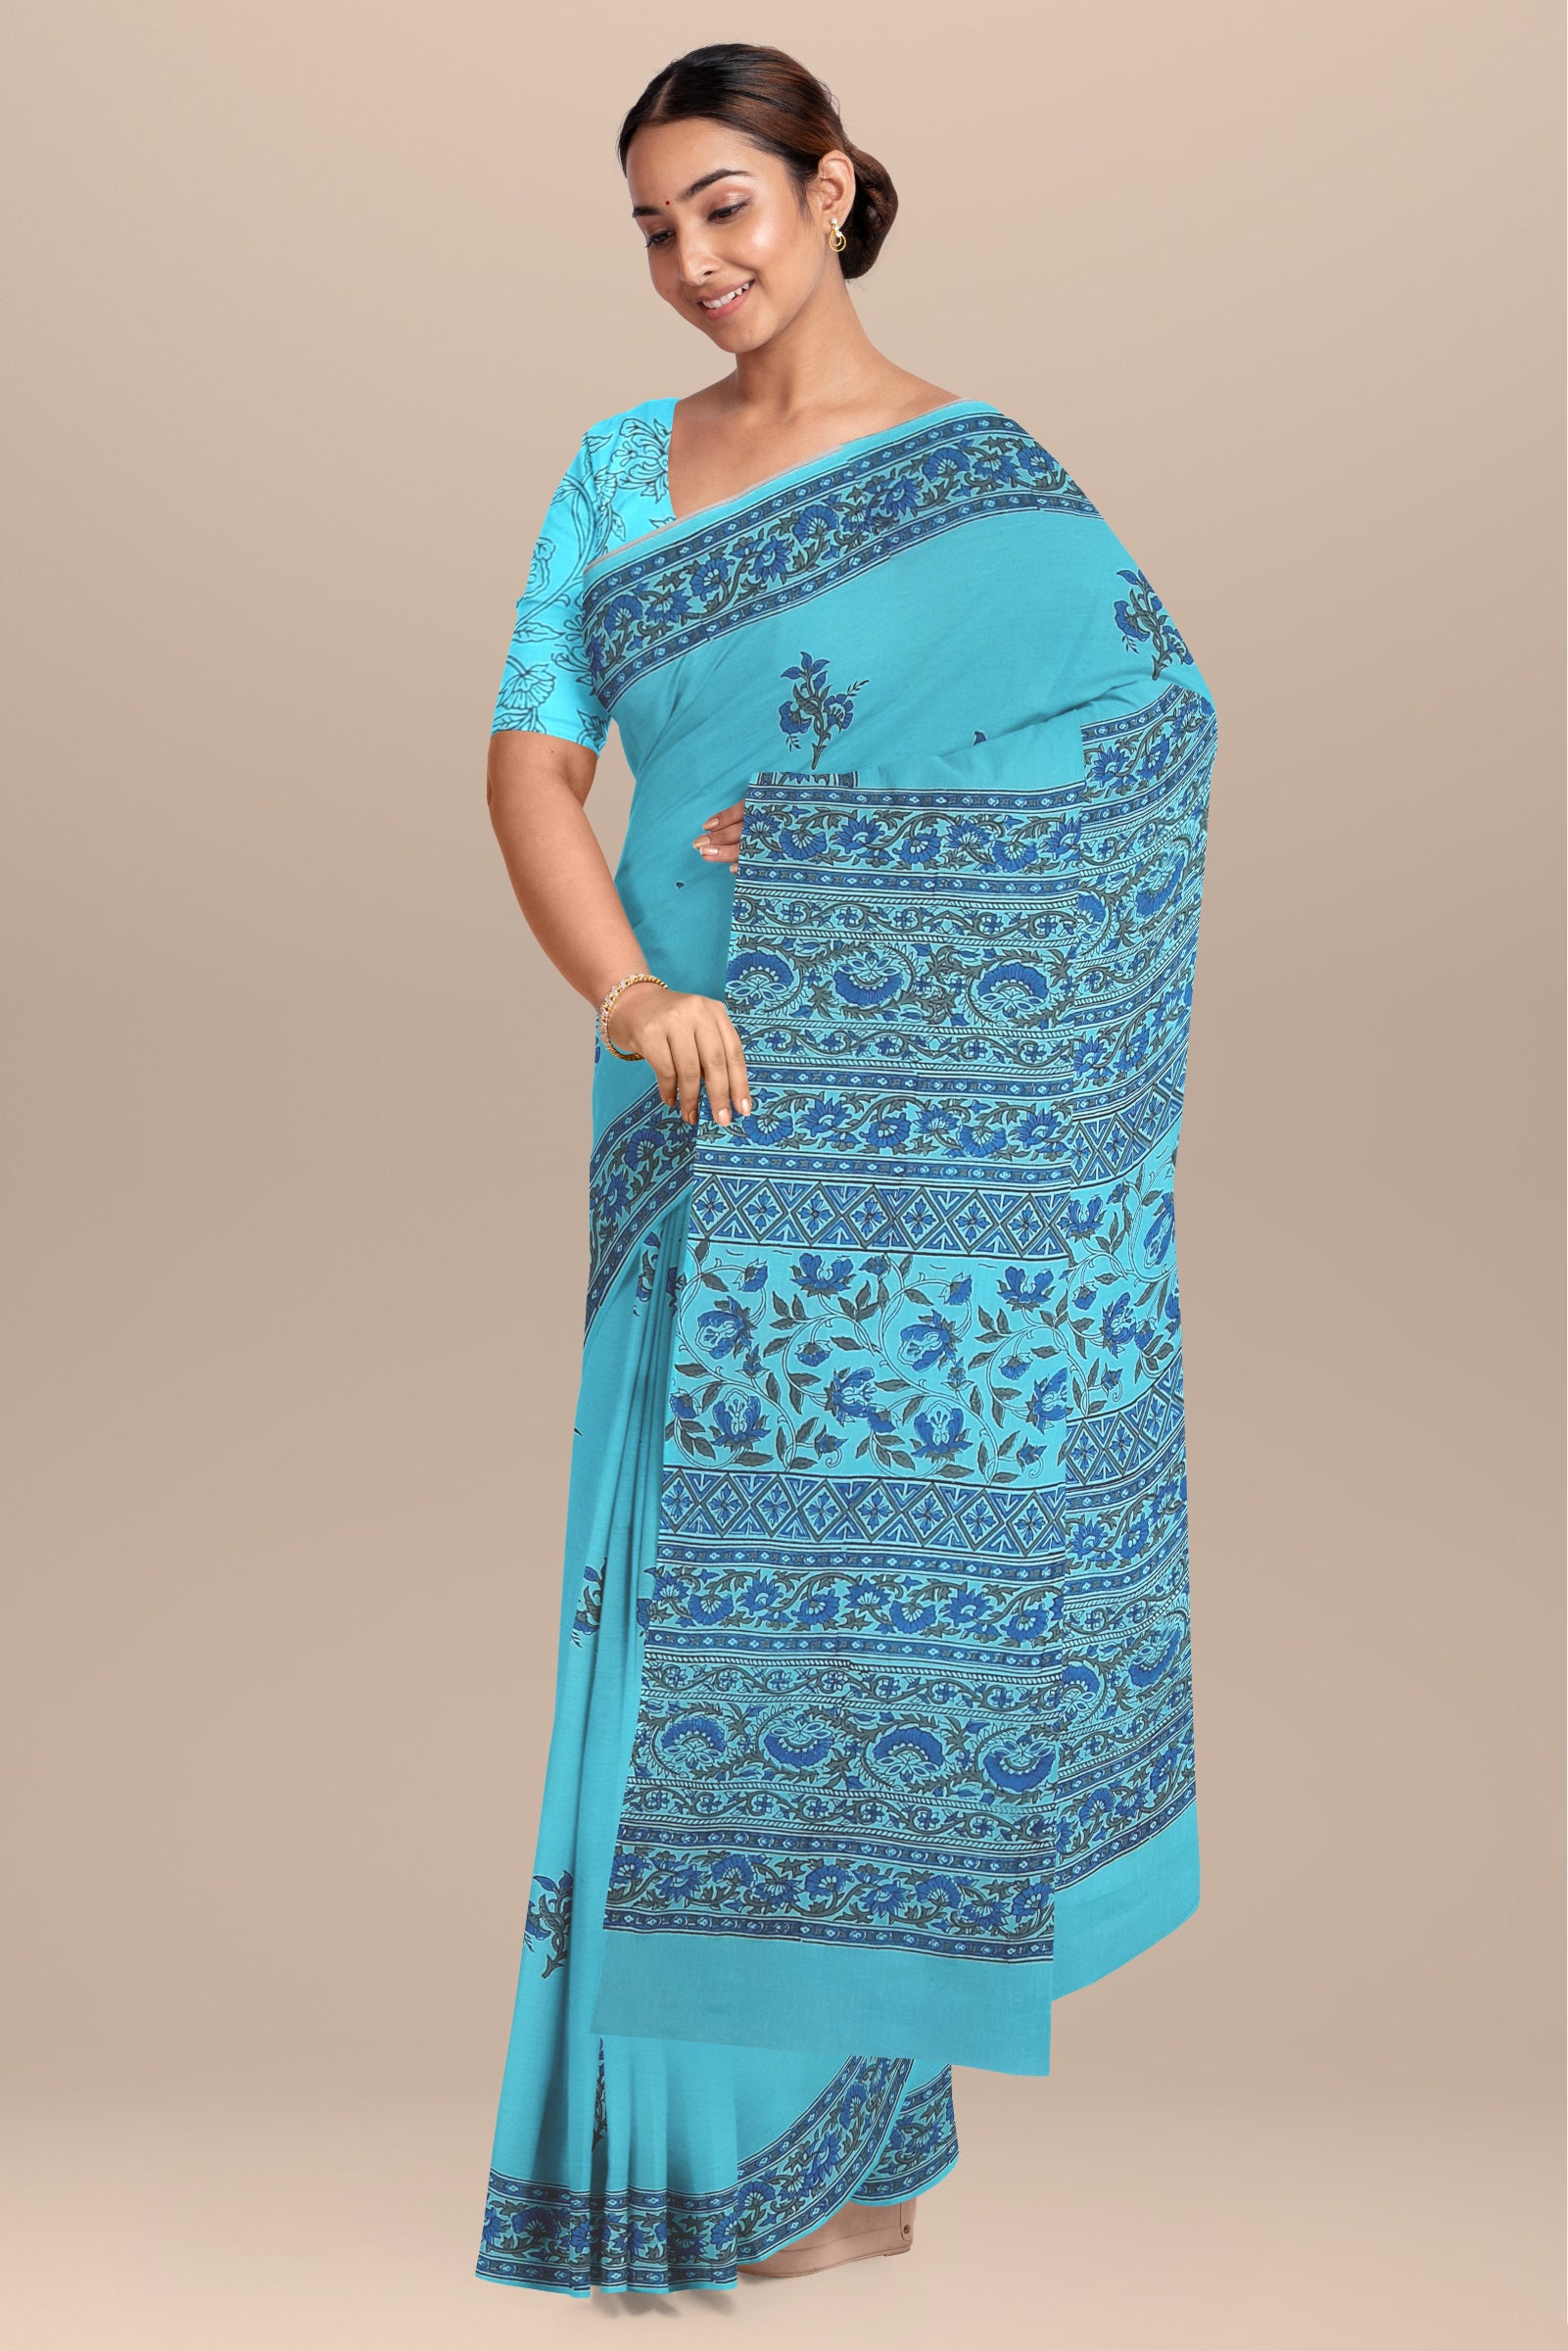 Chhipa Hand Block Printed Blue Color Malmal Cotton Saree With Floral Motif SKU- - Bhartiya Shilp